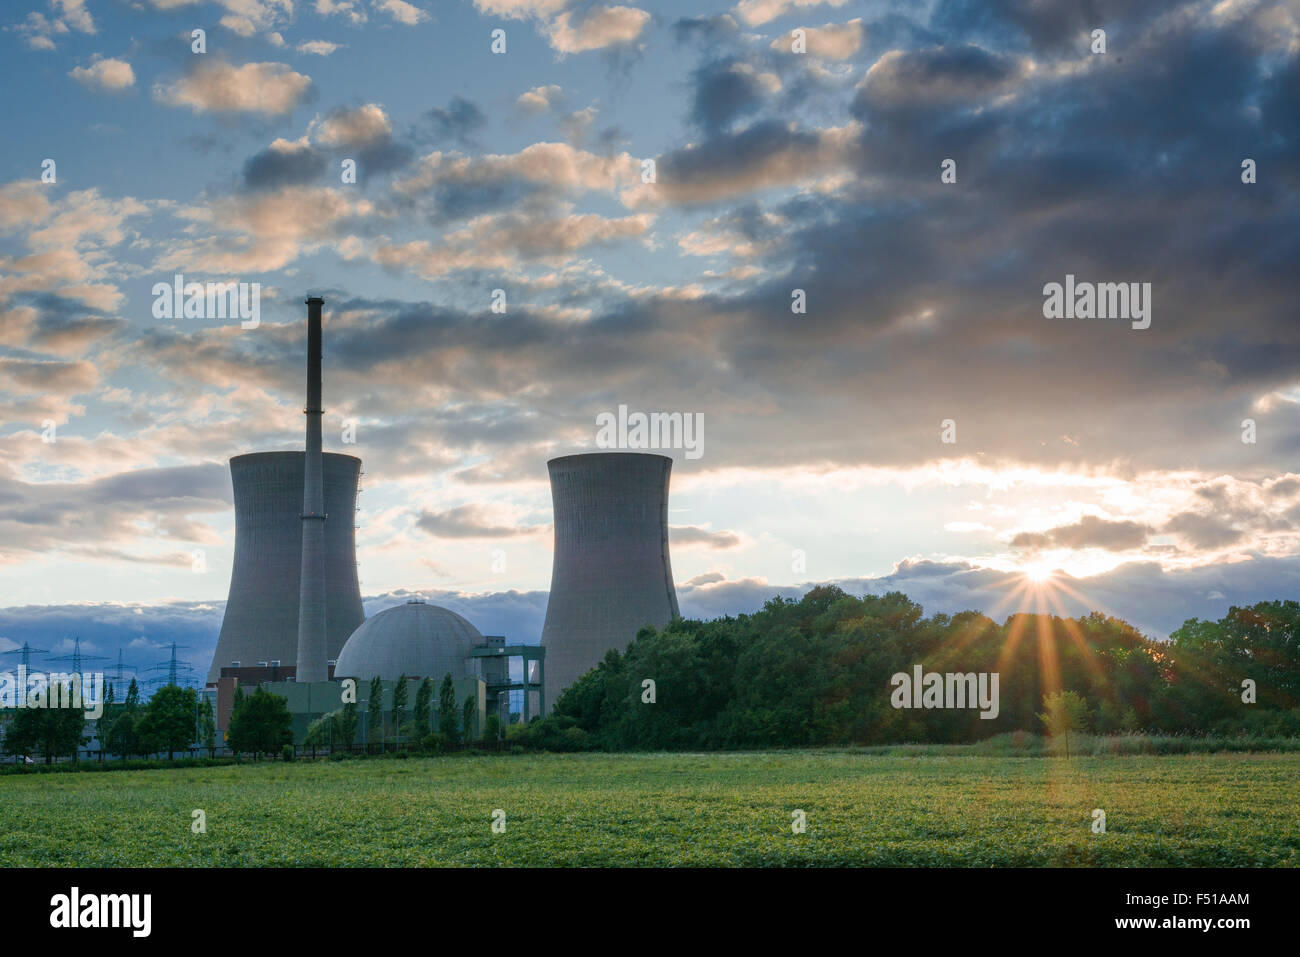 Die nuklearen Triebwerk Grafenrheinfeld, bei Sonnenuntergang gesehen Stockfoto